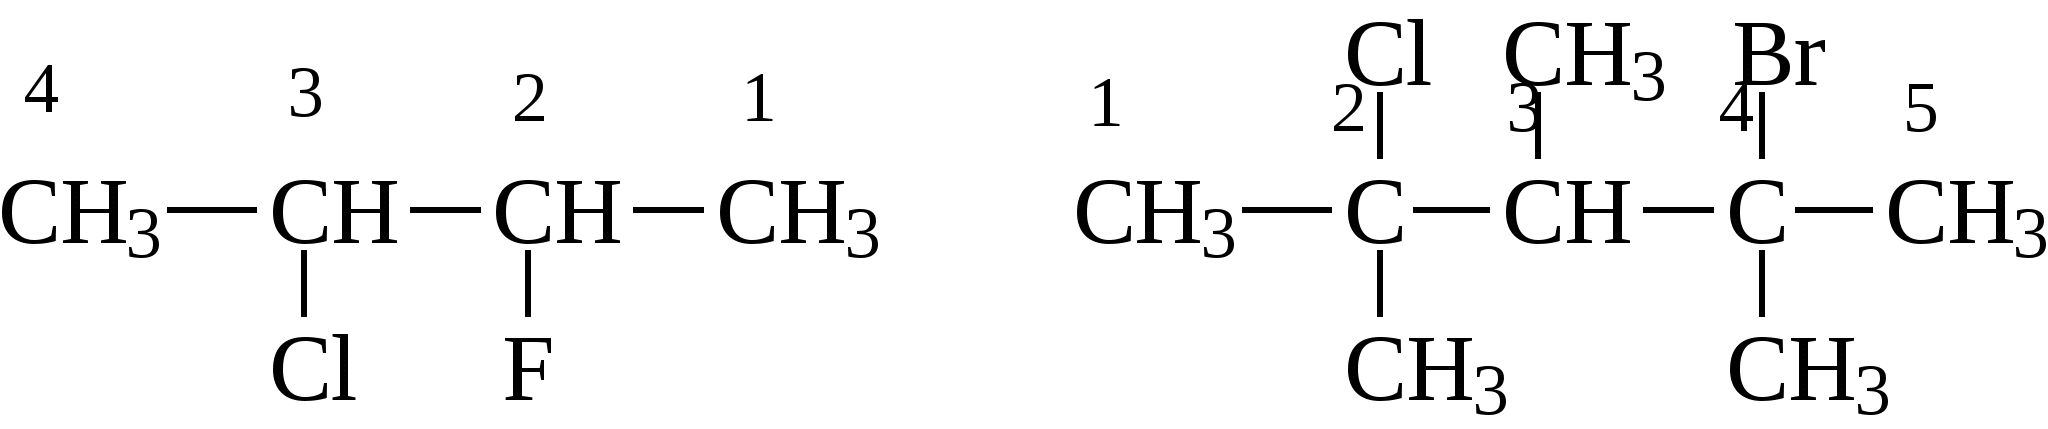 2 3 Хлорбутан. 2 Метил 1 хлорбутан. 2 Метил 3 хлорбутан. 3-Хлорбутана. 1 метил бутан